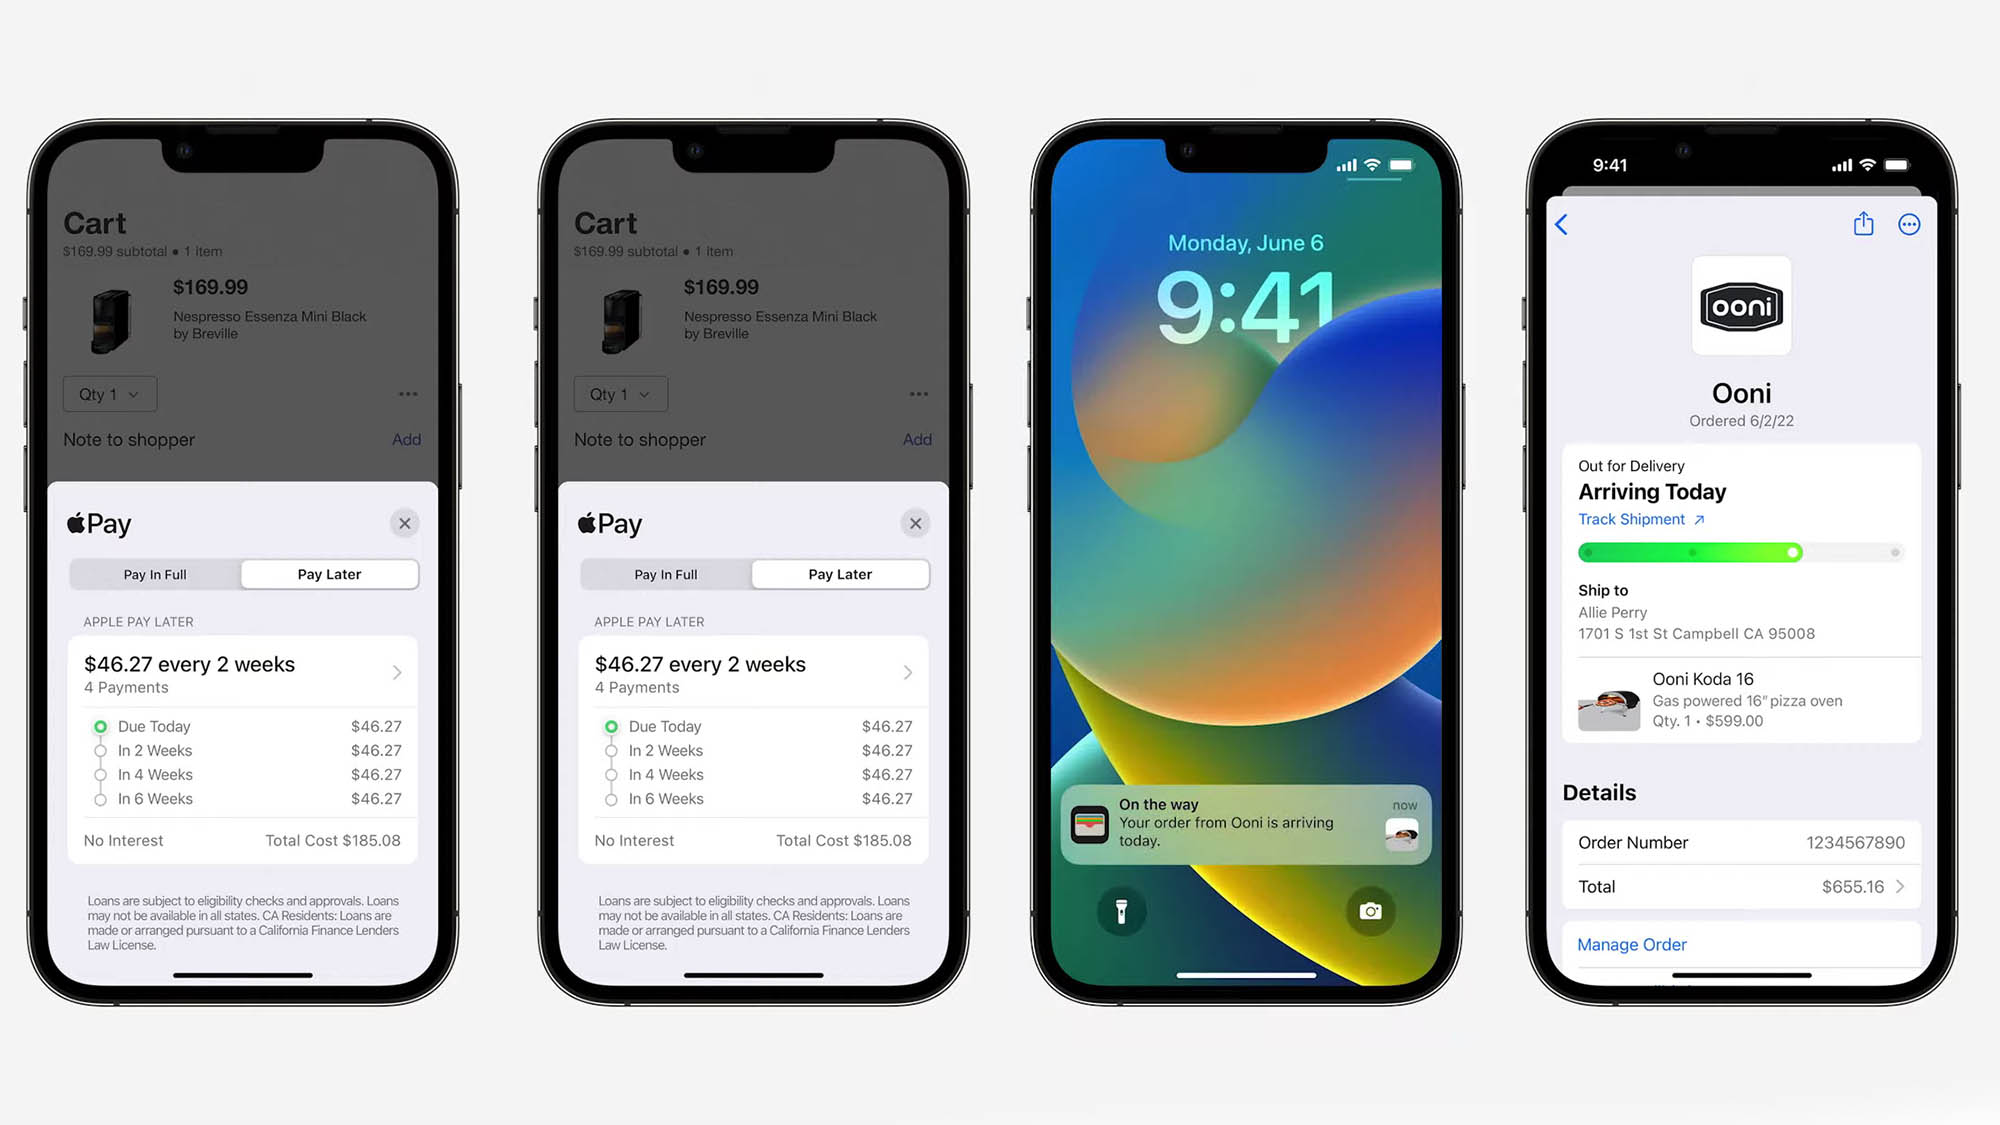 ऐप्पल पे लेटर फीचर चार आईफोन पर प्रदर्शित किया जा रहा है जो सभी एक पंक्ति में हैं। फोन के डिस्प्ले अलग-अलग भुगतान तिथियां और लॉक स्क्रीन नोटिफिकेशन दिखाते हैं जो फीचर के साथ आएंगे।